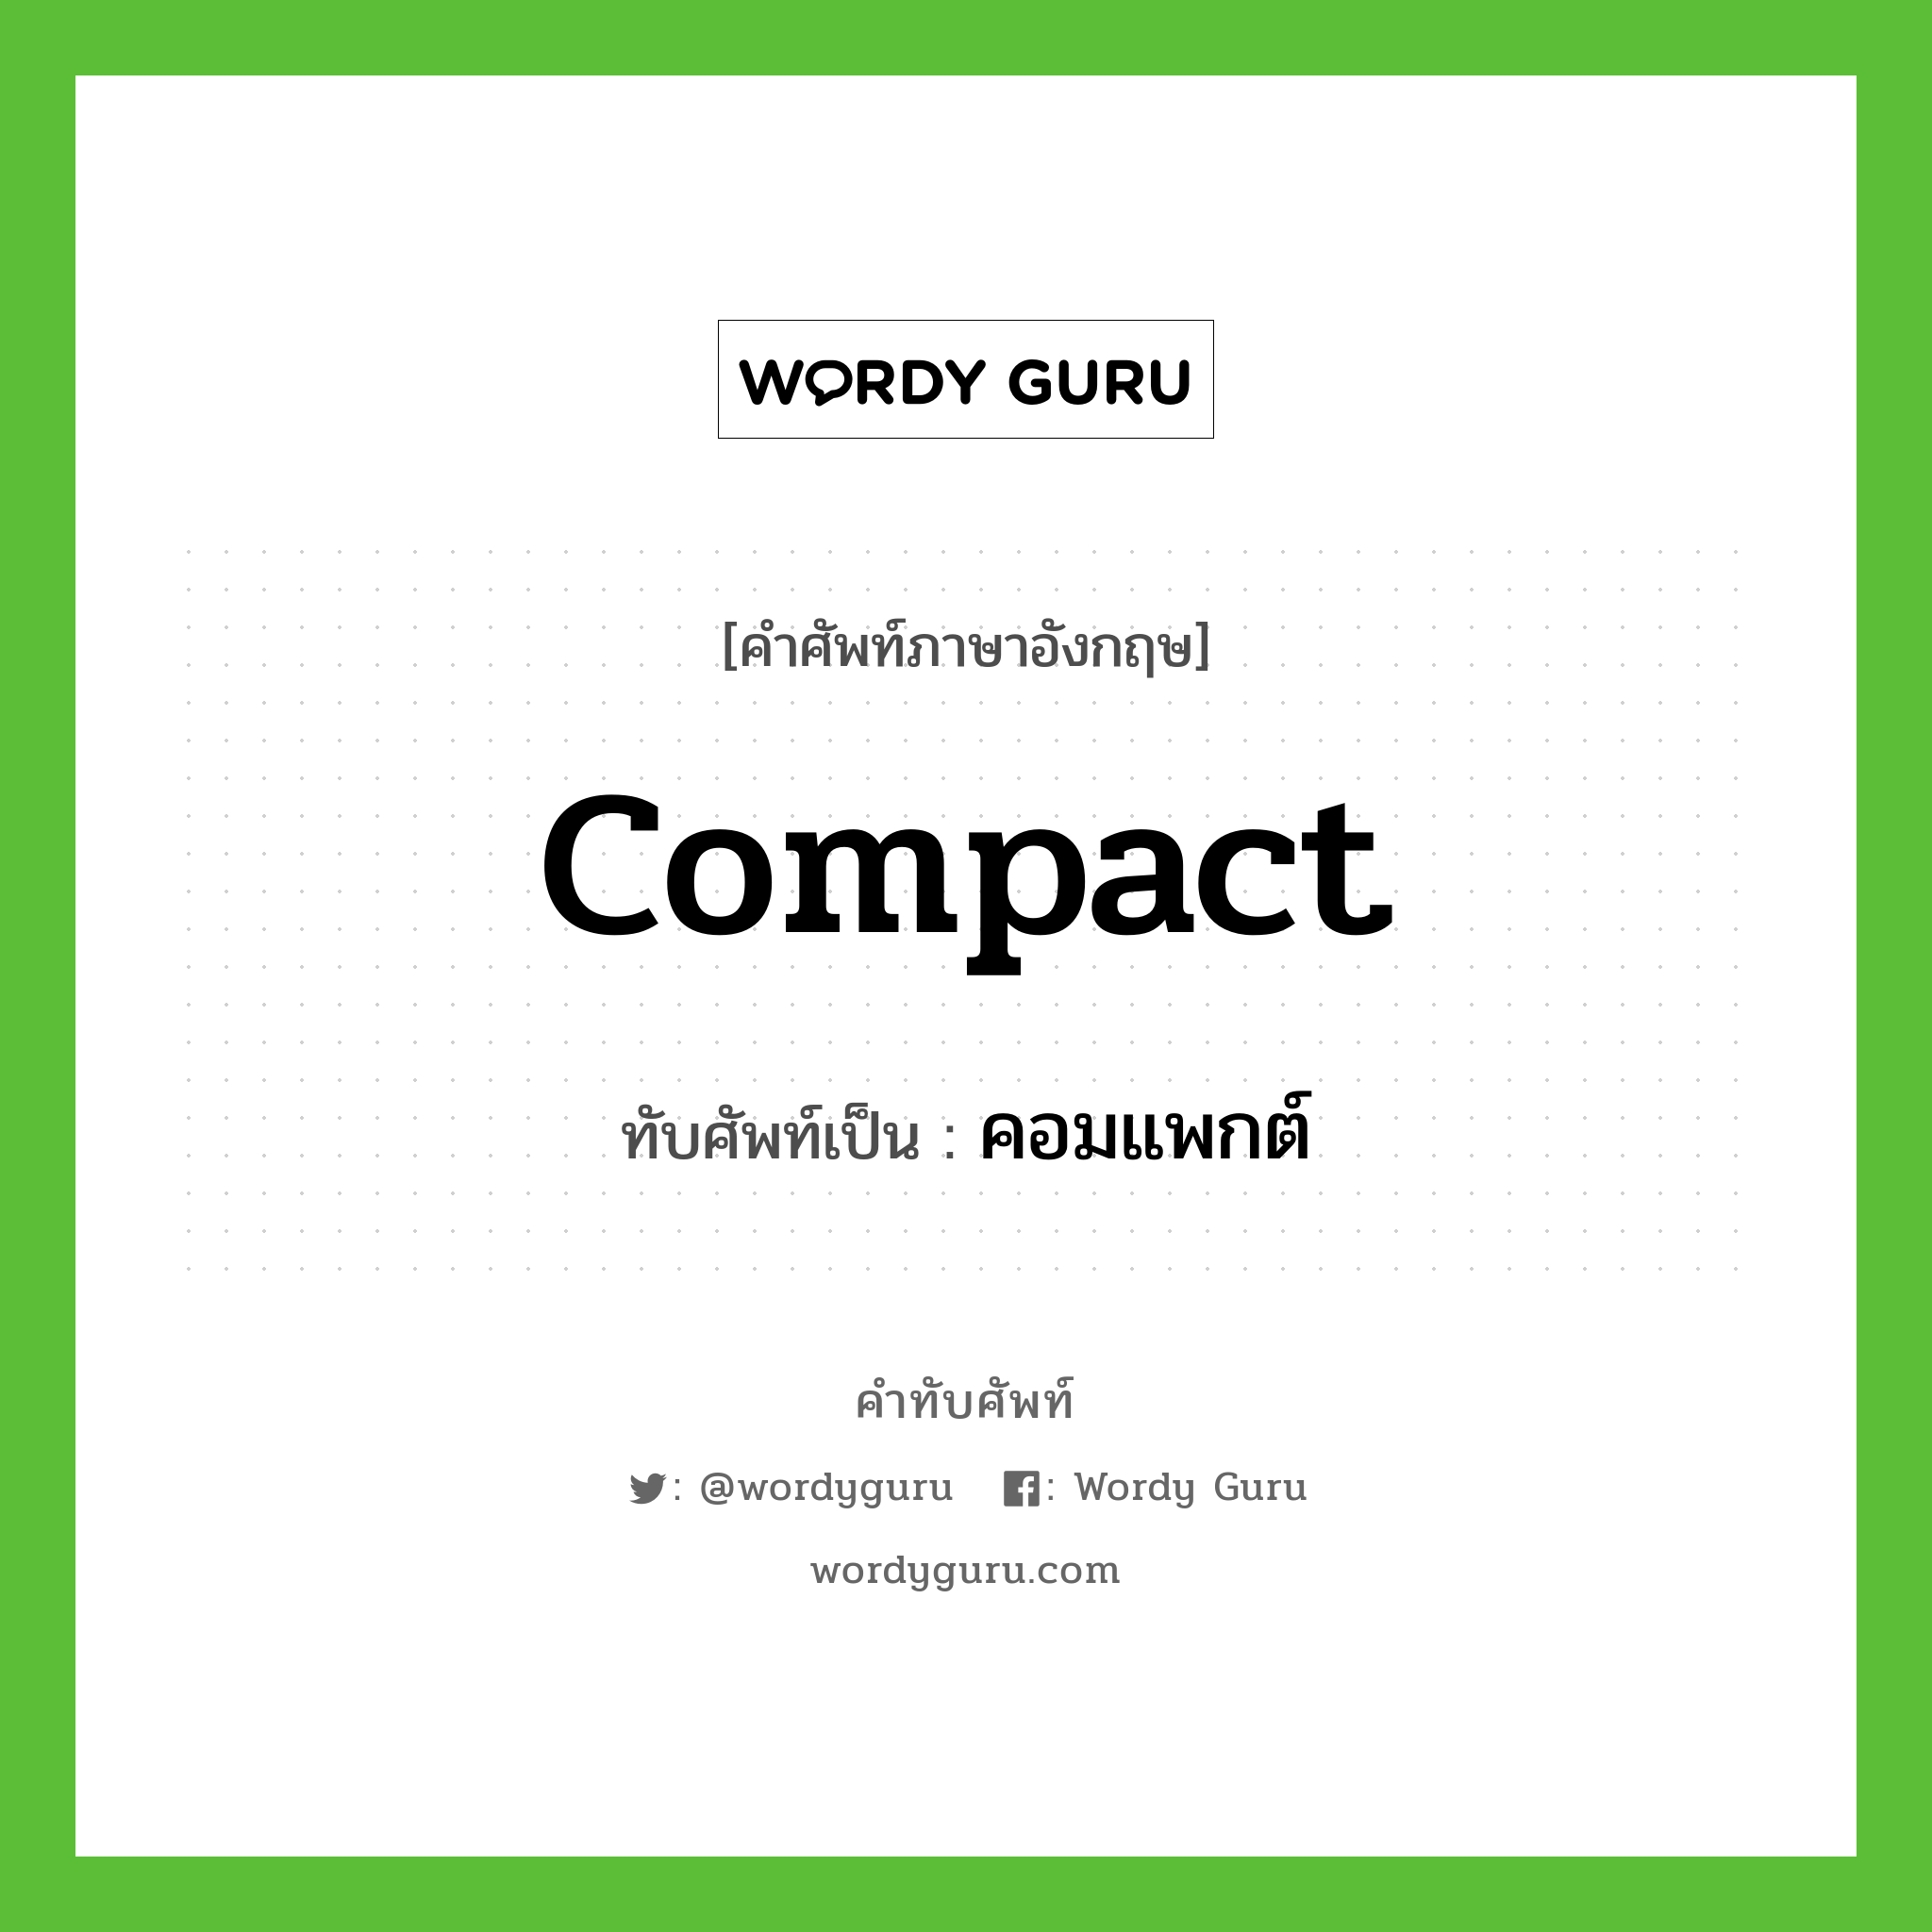 compact เขียนเป็นคำไทยว่าอะไร?, คำศัพท์ภาษาอังกฤษ compact ทับศัพท์เป็น คอมแพกต์